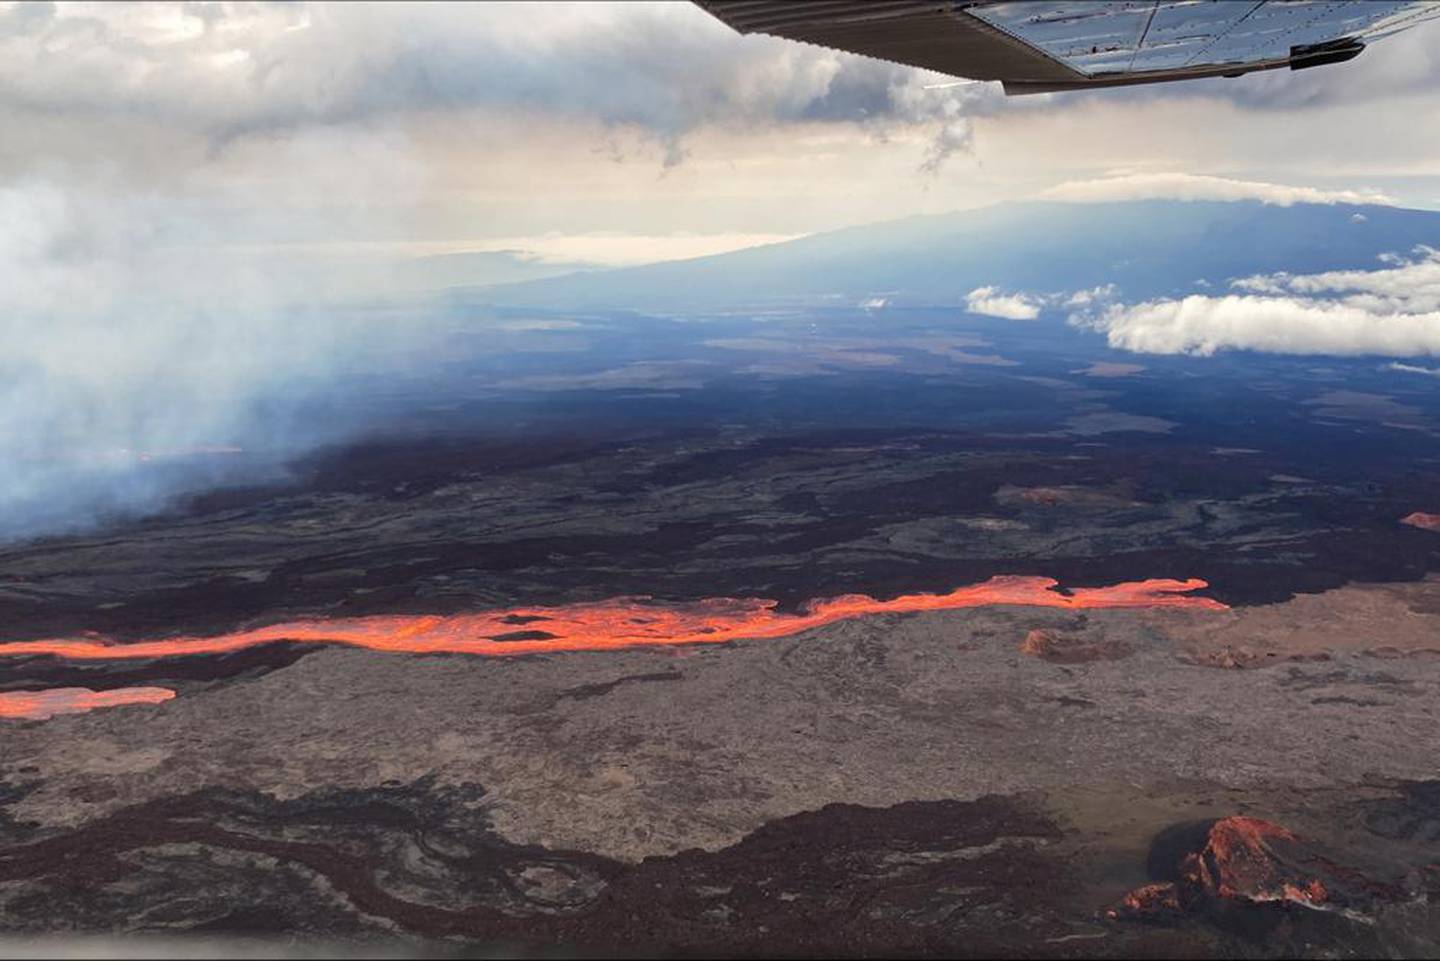 世界上最大的活火山夏威夷的莫纳罗亚火山开始从山顶喷出火山灰和碎屑，促使民防官员警告居民。 图片/美国地质调查局